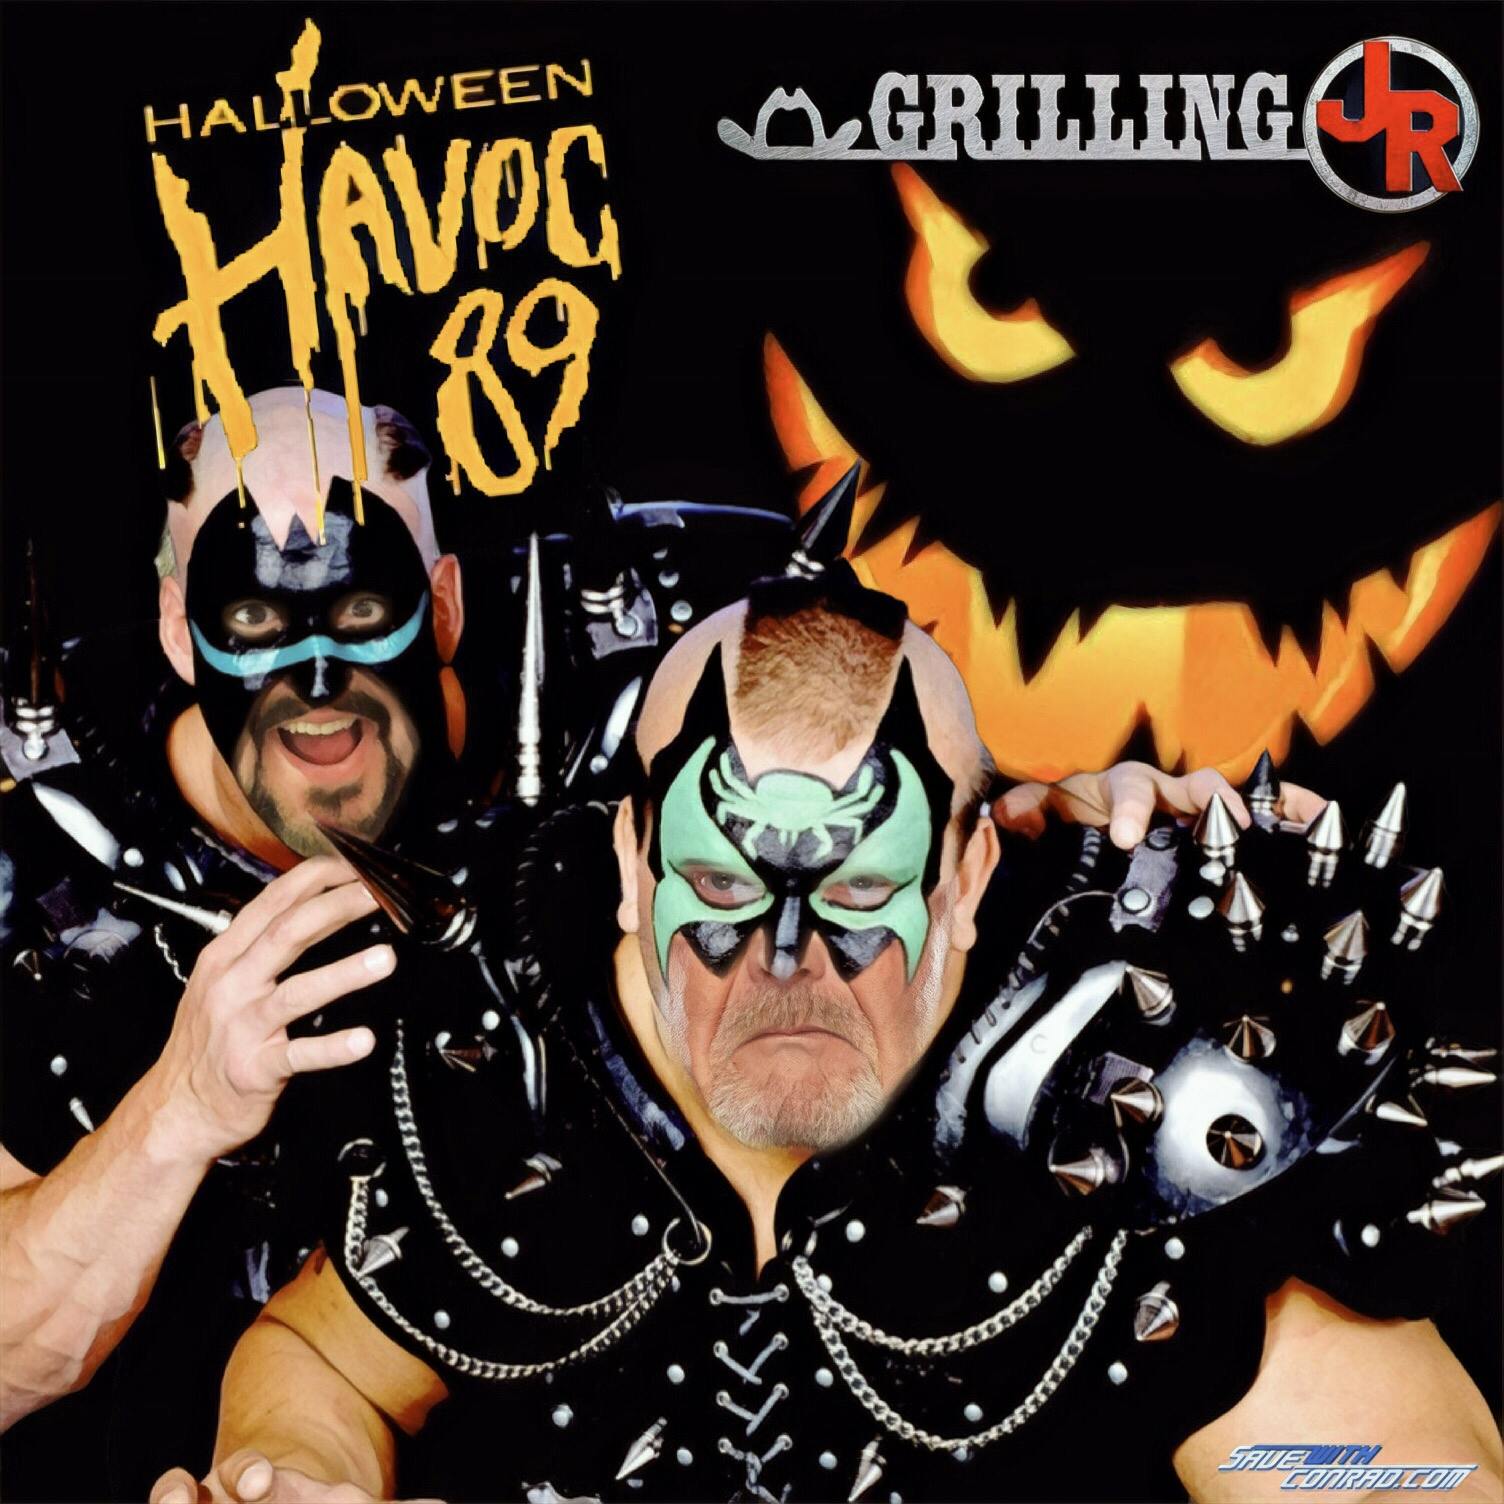 Episode 27: Halloween Havoc '89